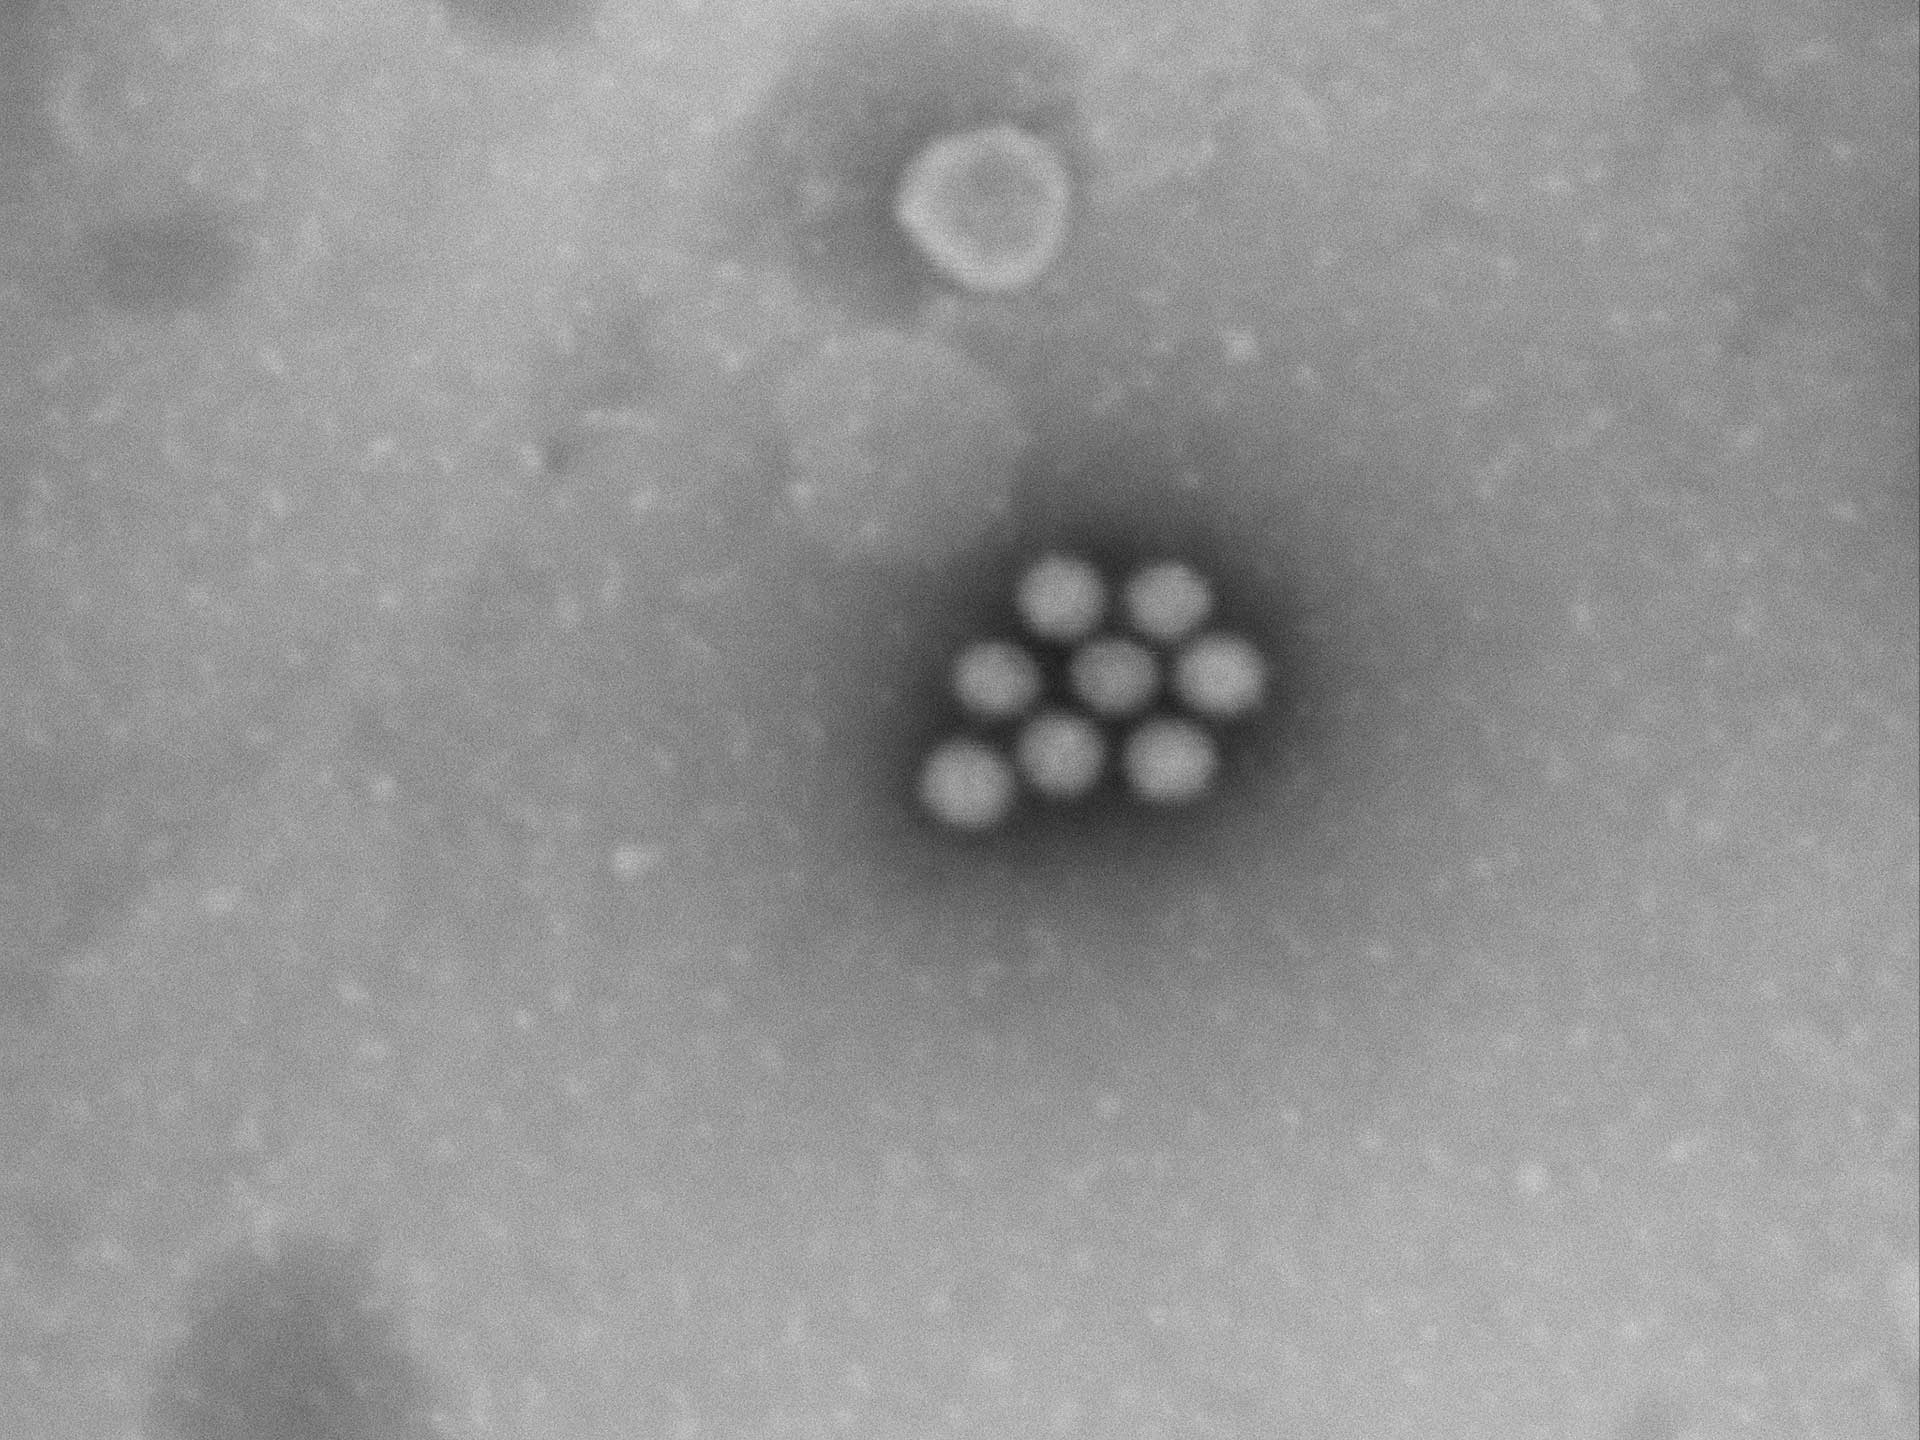 Die charakteristische Form der Zellen ermöglicht den Nachweis von Rotaviren.